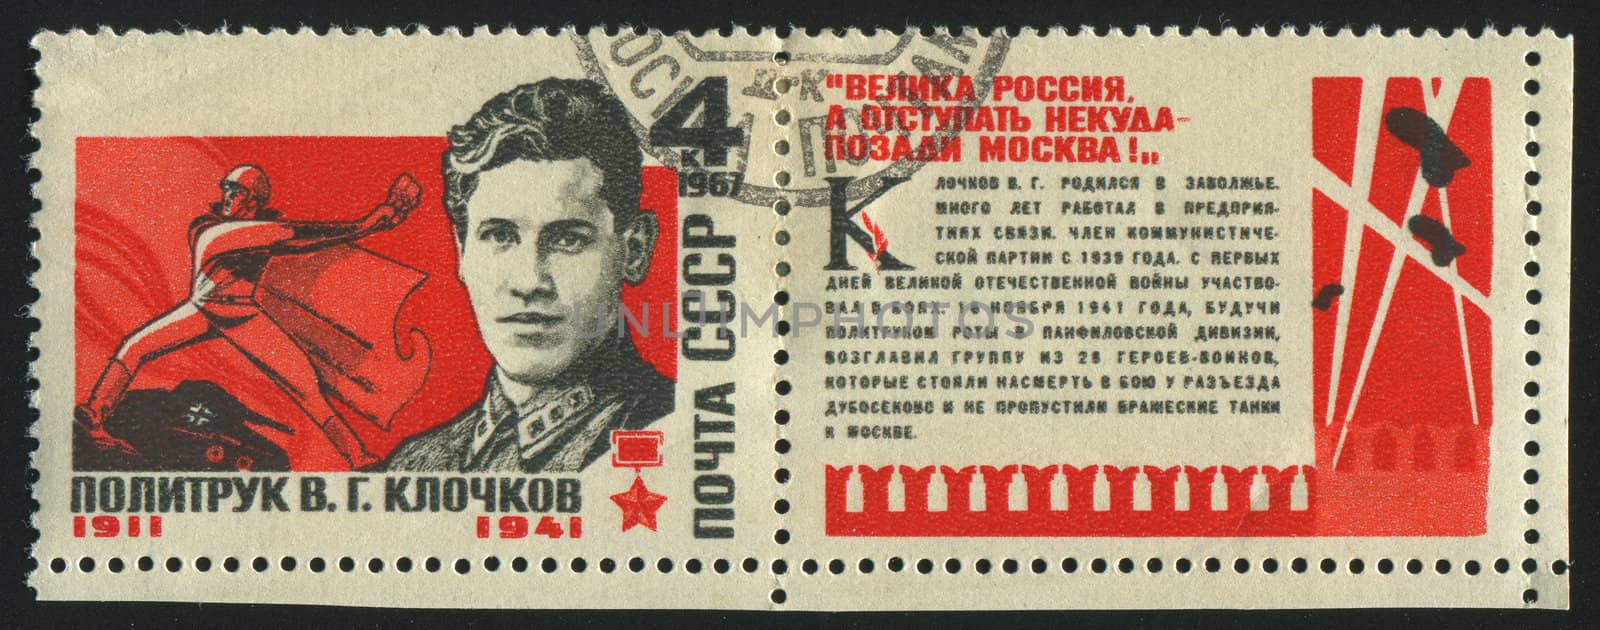 RUSSIA - CIRCA 1967: stamp printed by Russia, shows V. G. Klochkov Hero of the Soviet Union,  circa 1967.